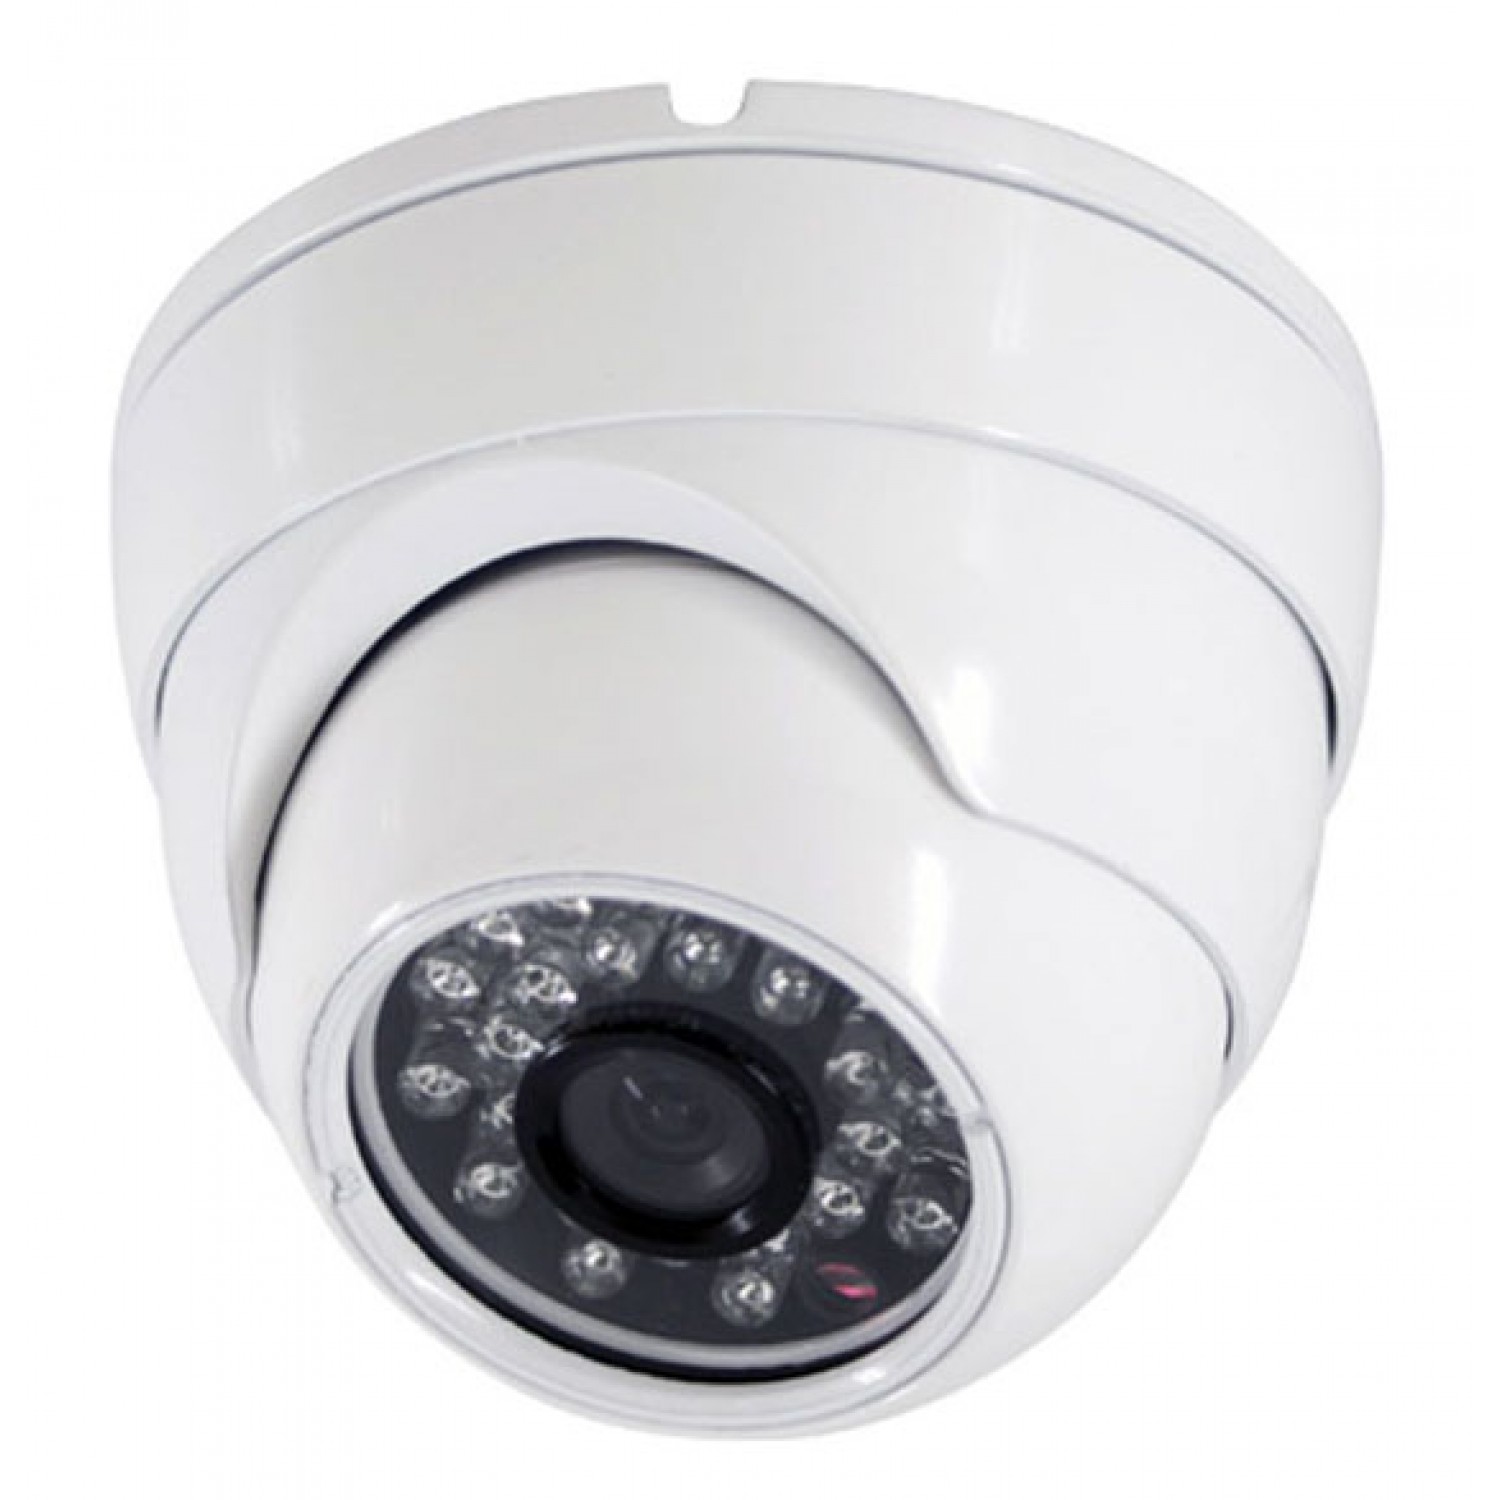 Камеры видеонаблюдения купить в спб. Видеокамера AHD el MDM2.1(3.6)_V.2 2.1МП, 3.6 мм, ИК до 20м, металл, антивандальная. AHD видеокамера антивандальная 2.1МП SSDCAM Ah-102. O'Zero NC-vd20p (2.8-12 мм). IP видеокамера SSDCAM IP-572.